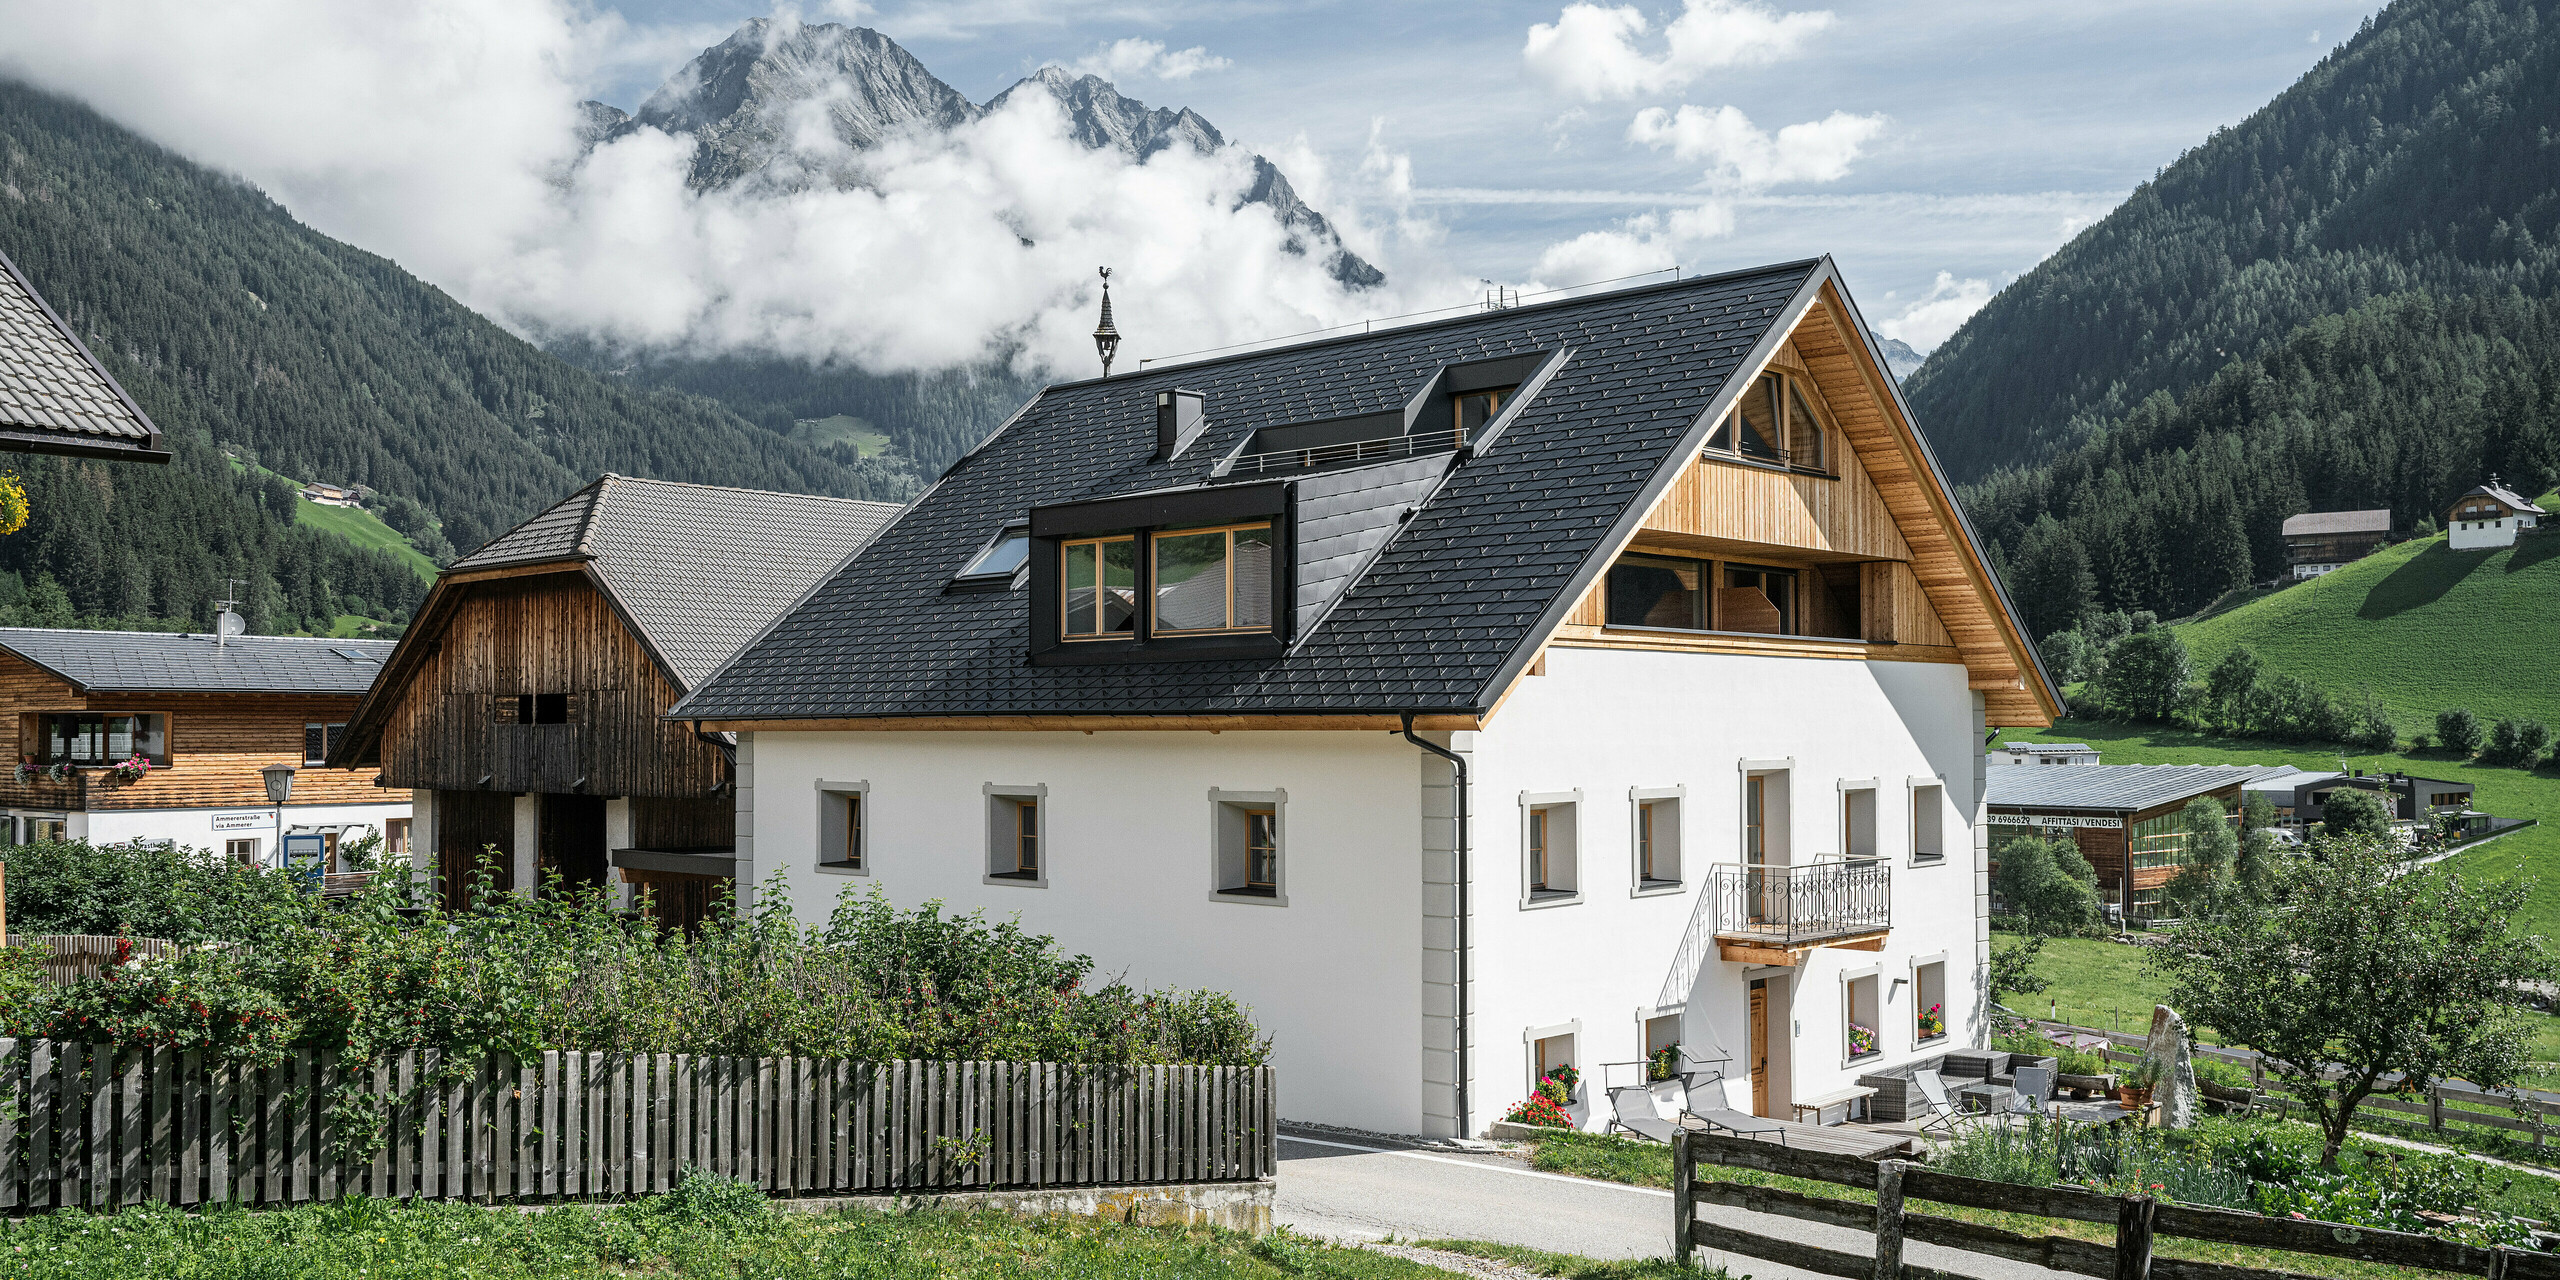 Celkový pohľad na rekreačné apartmány Ausserwegerhof v idylickom údolí Antholz, Južné Tirolsko, pokryté strešným šindľom PREFA DS.19 v antracitovej farbe. Tradičná stavba sa snúbi s modernými prvkami a ponúka malebný výhľad na majestátnu horskú kulisu, tajomne obklopenú mrakmi. Ausserwegerhof v strede obrázku je obklopený klasickými farmami a zelenými lúkami.